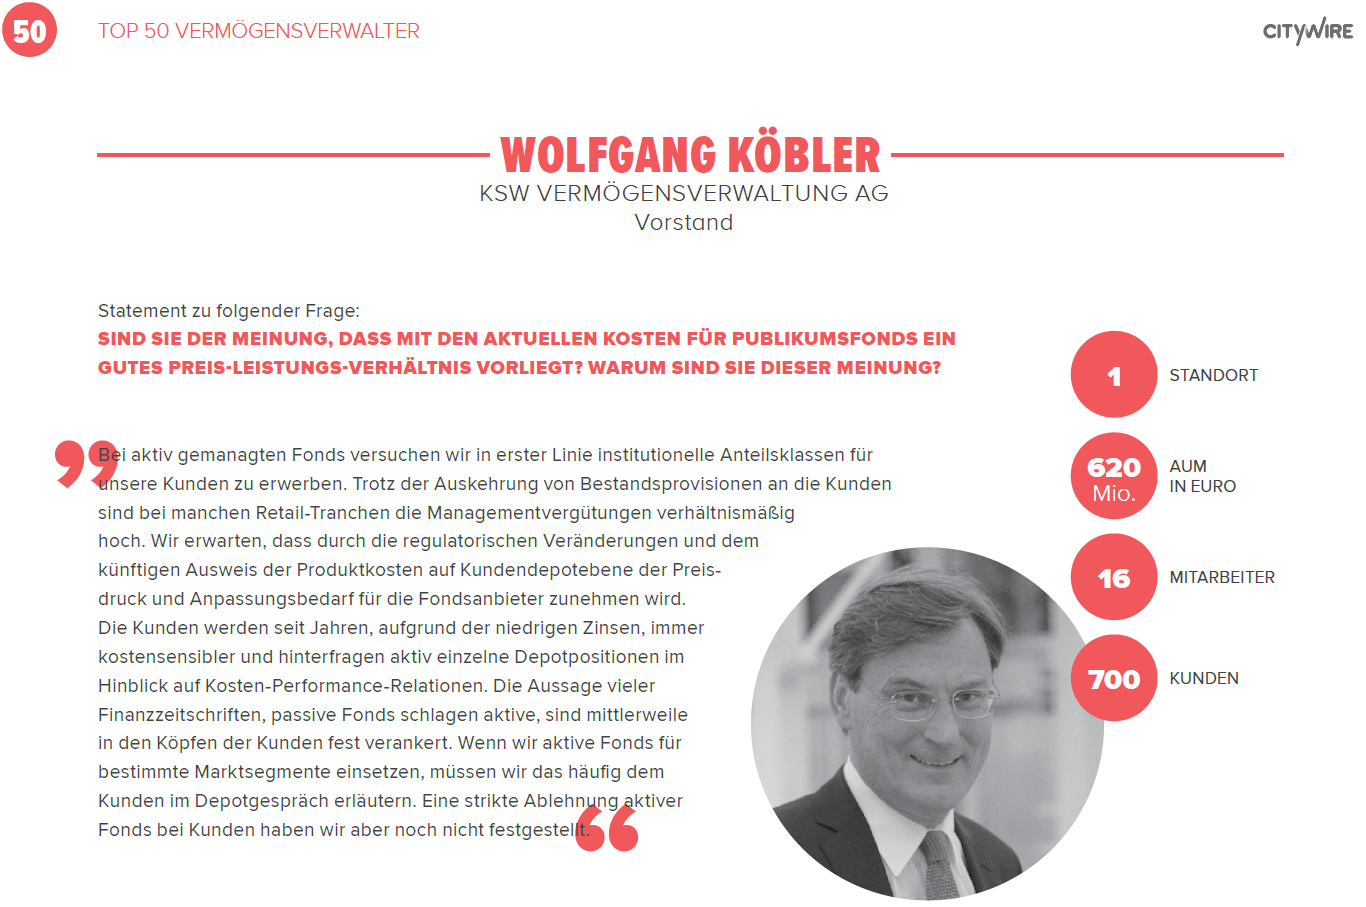 Statement von Vorstand Wolfgang Köbler zur Auszeichnung der KSW Vermögensverwaltung unter den Top 50 Vermögensverwaltern 2019